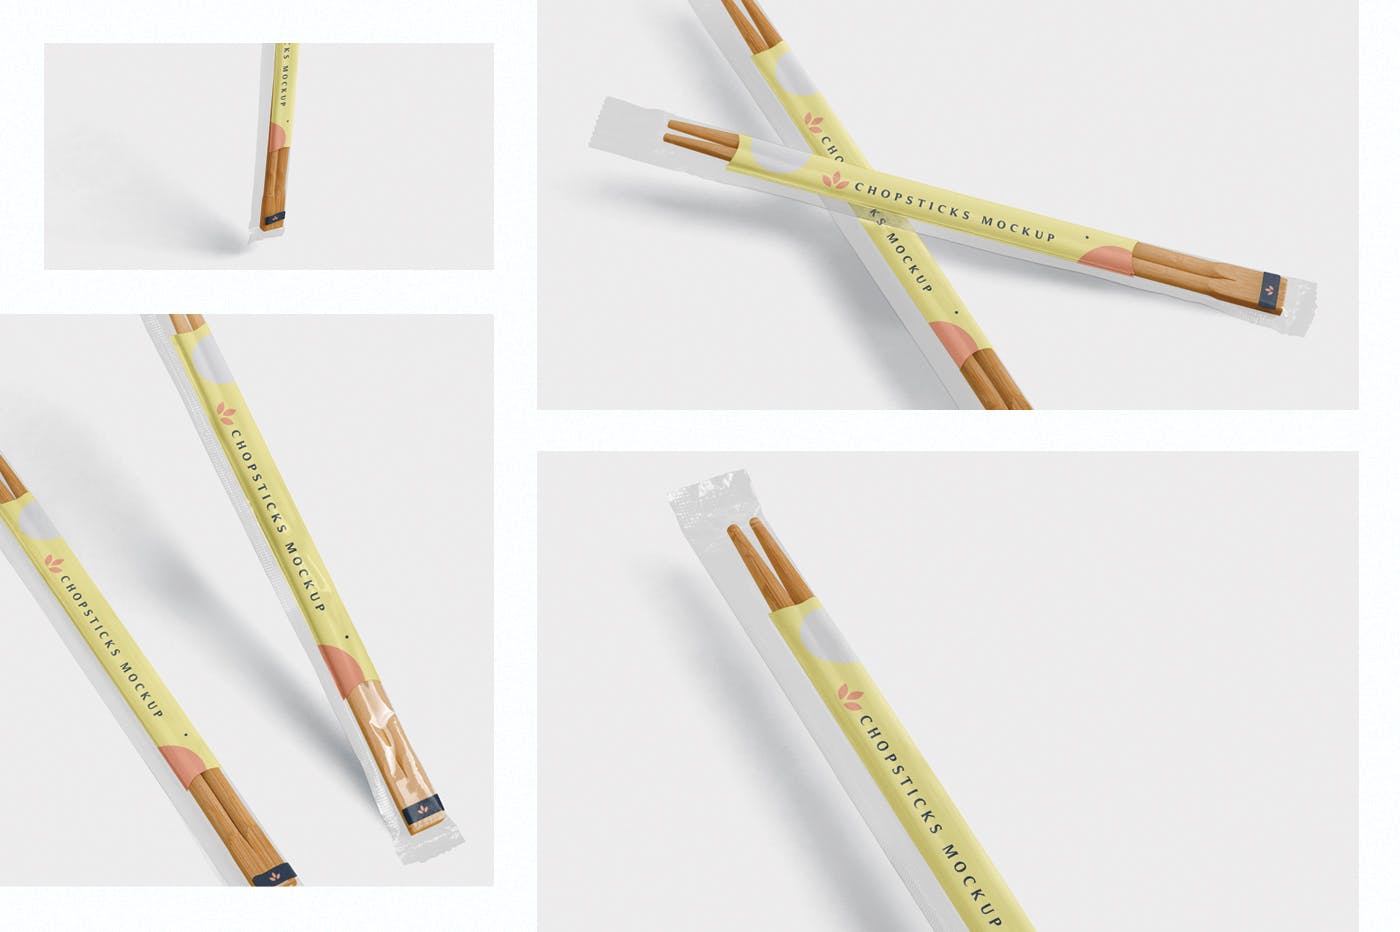 筷子透明包装设计效果图样机 Chopsticks Mocku